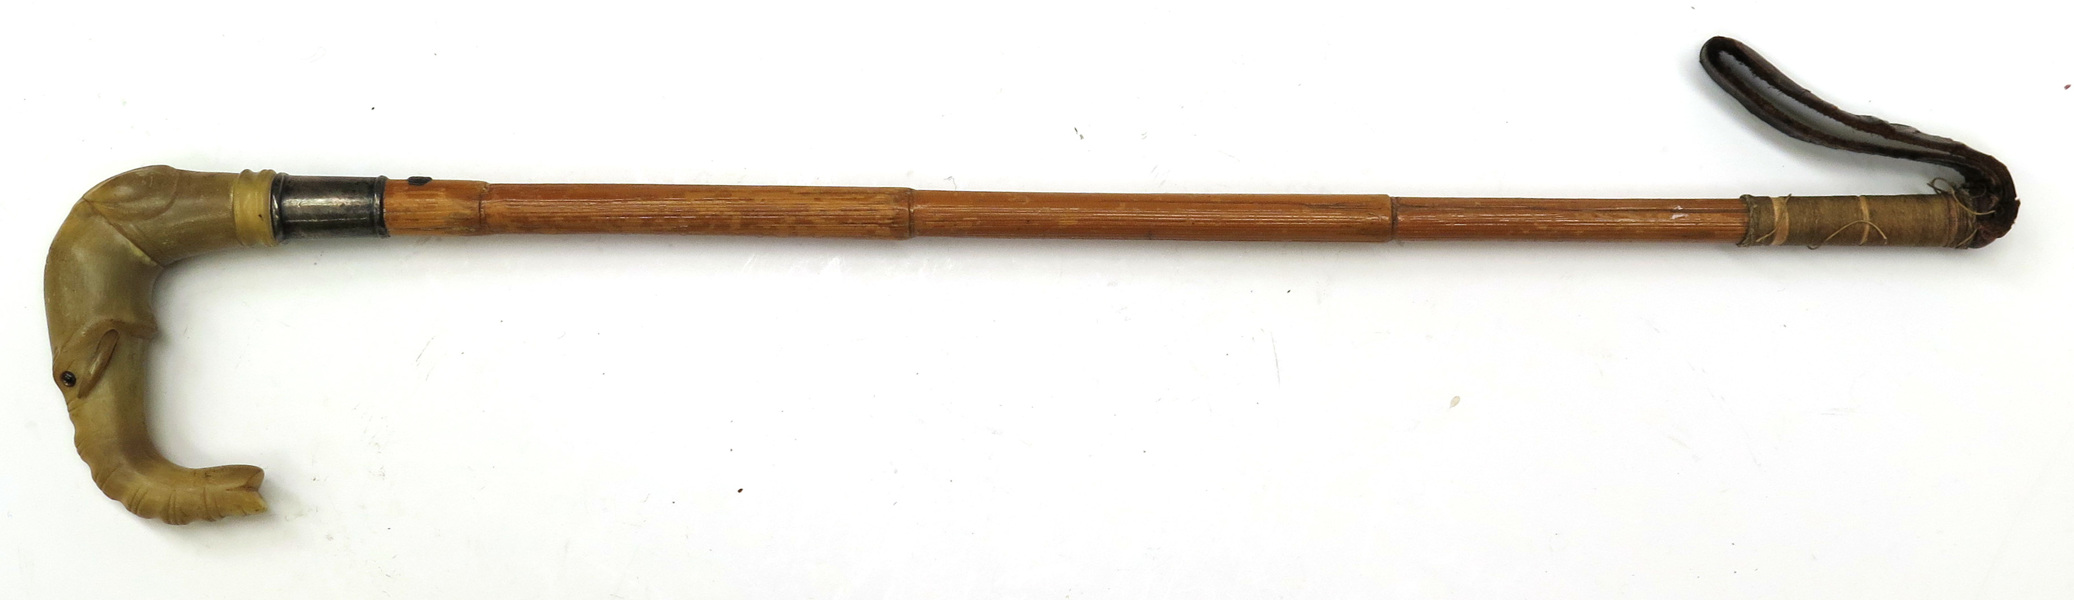 Ridpiska, bambu, horn och läder med montage i sterlingsilver, Howell of London, 1900-talets början, krycka i form av elefanthuvud, _7848a_lg.jpeg